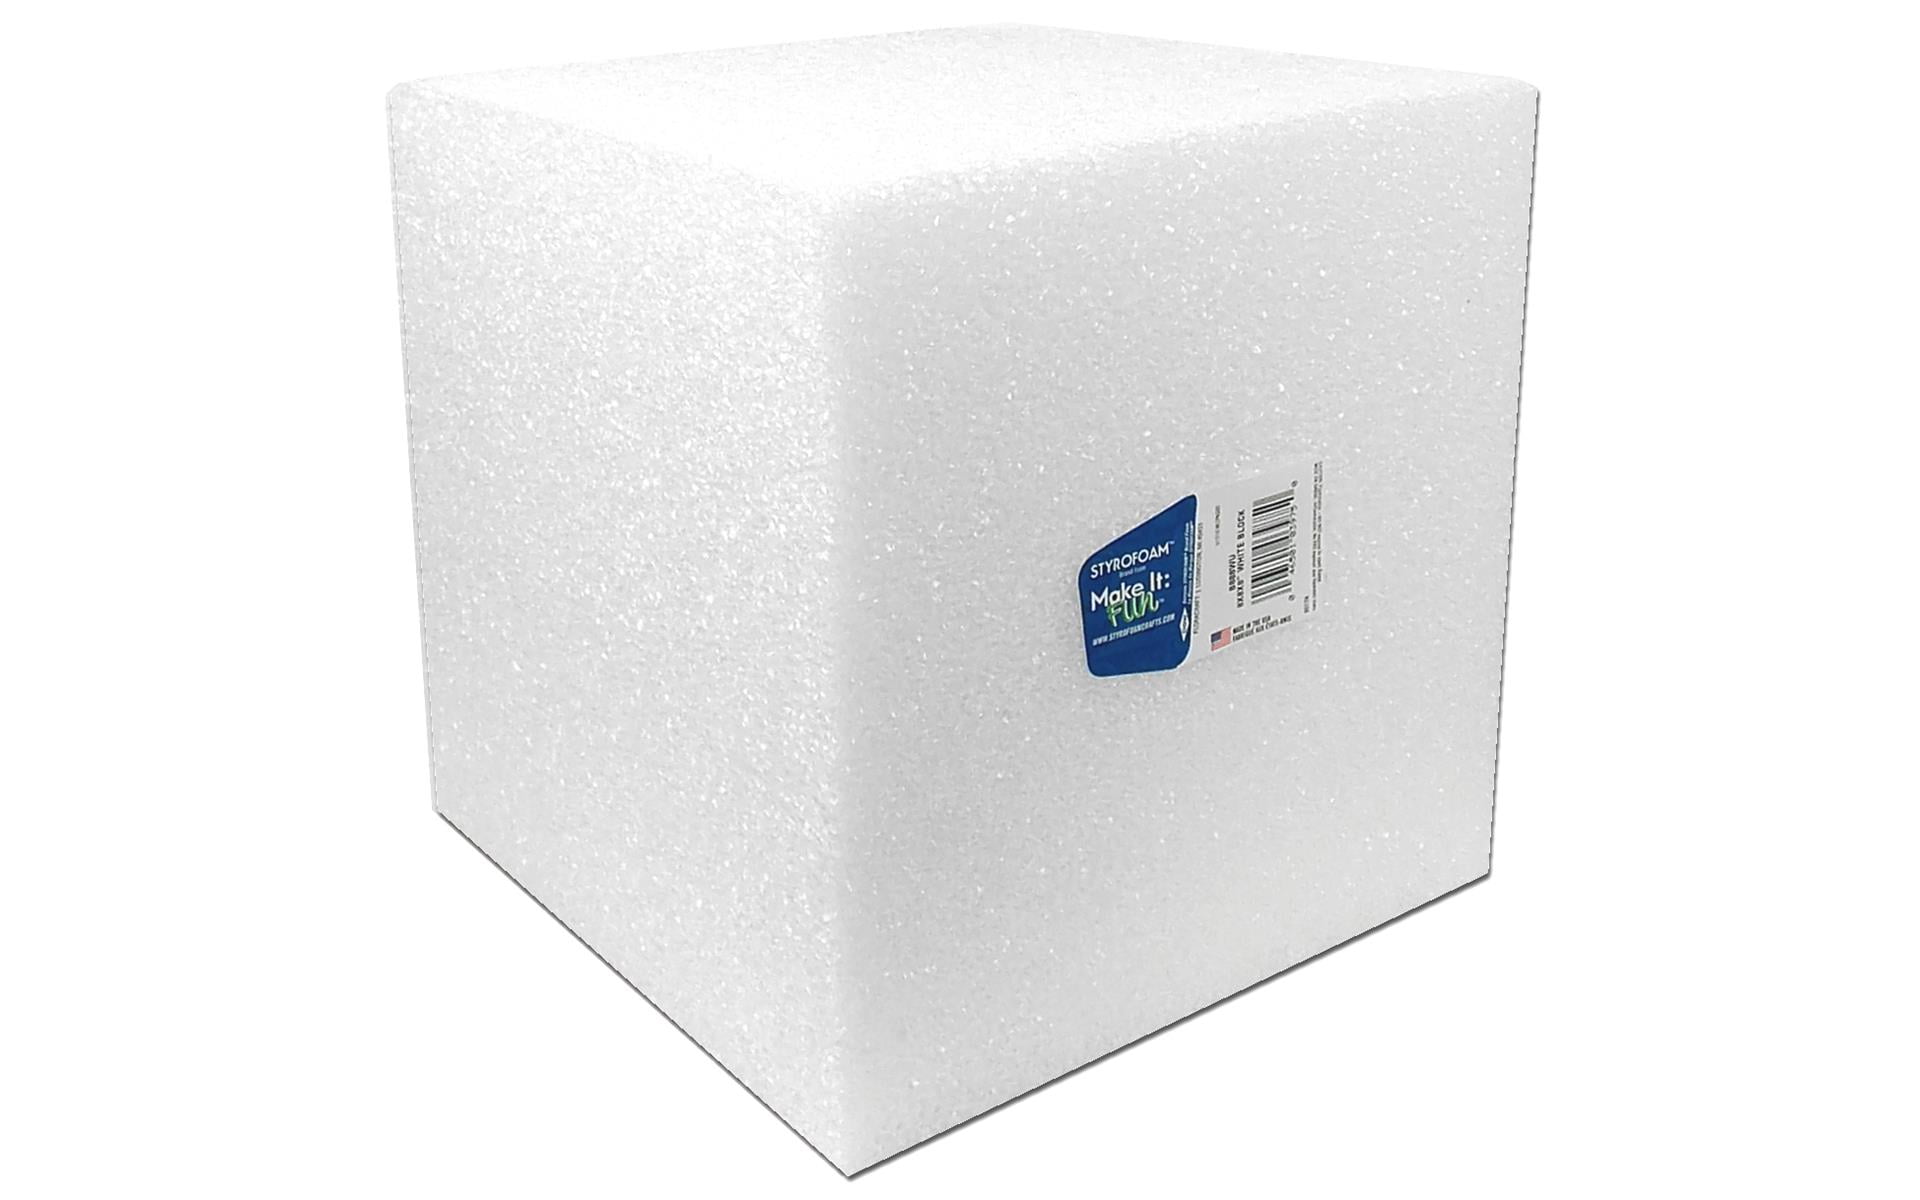 Foam Block - White PU Foam Block Manufacturer from Hyderabad